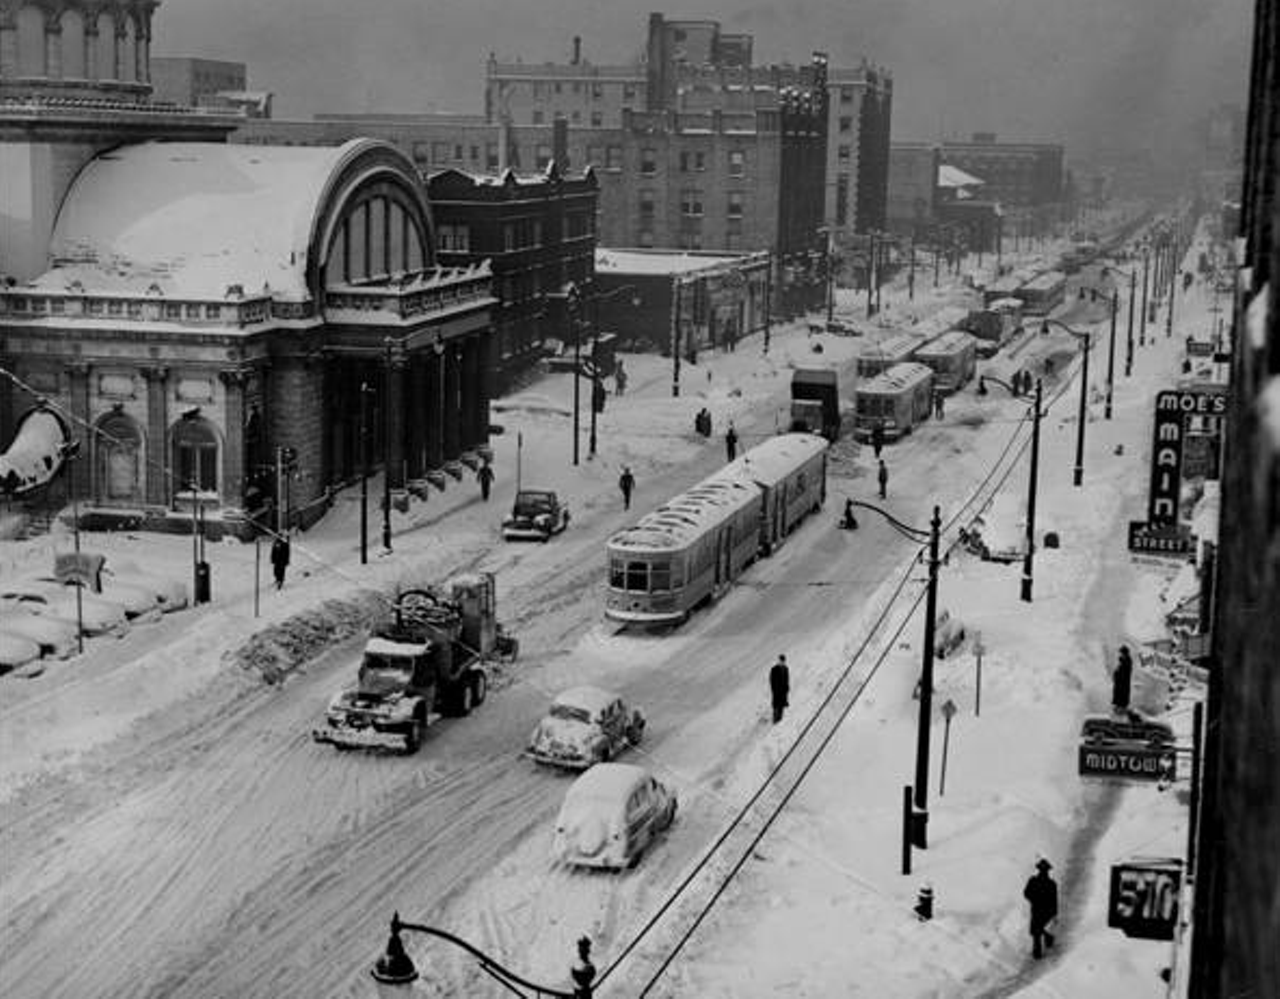 Commuters battle the snow on Euclid Avenue, 1950s.